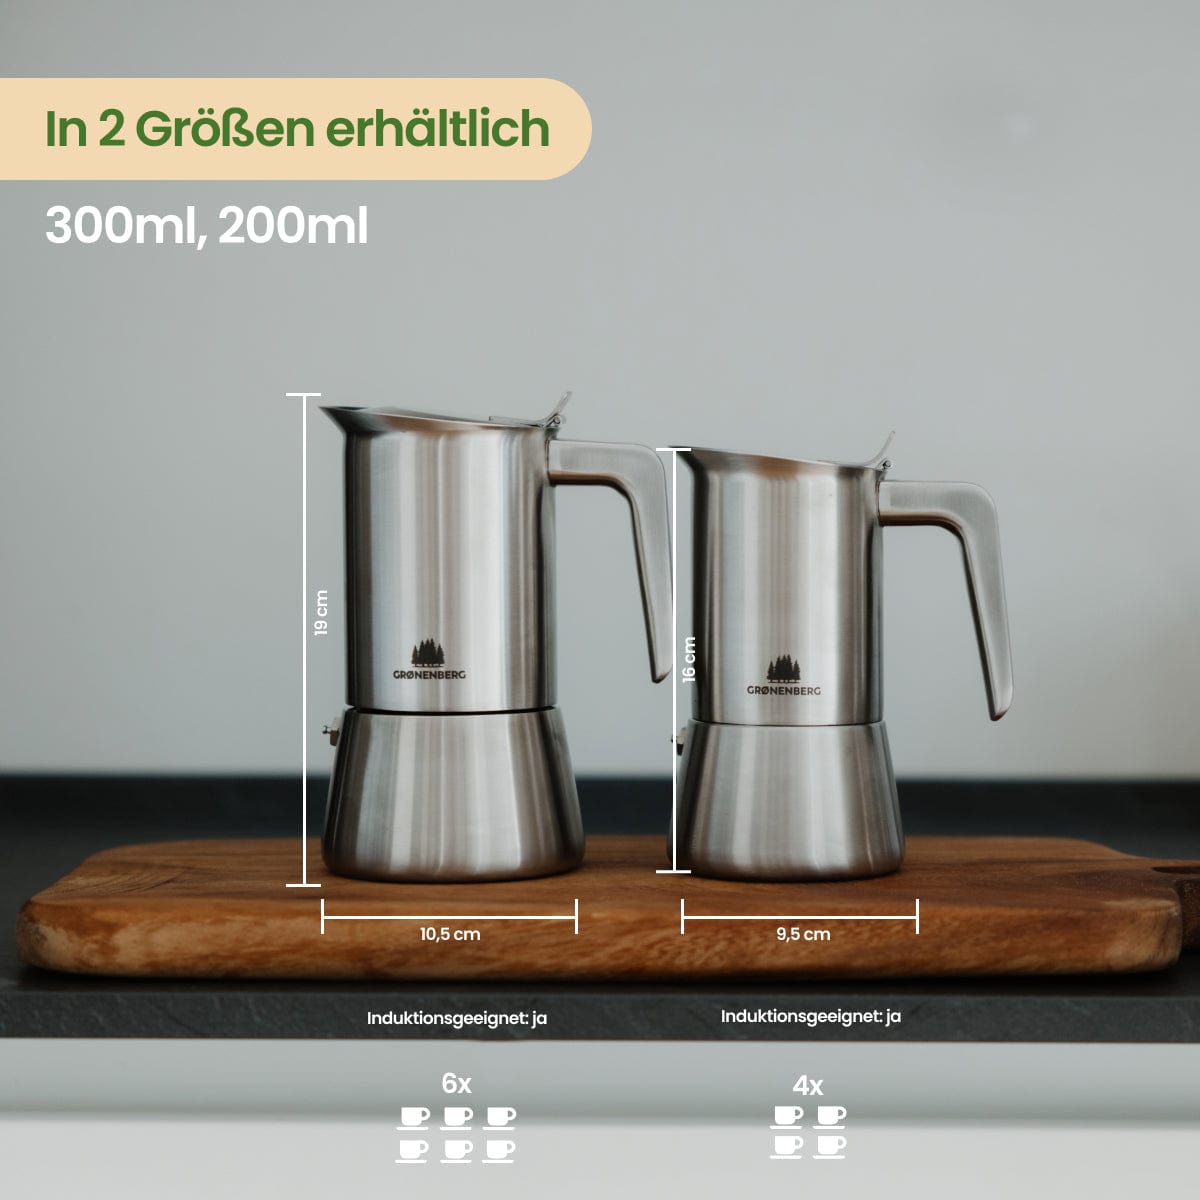 Edelstahl Espressokocher 6 Tassen (300 ml) | Induktion | Mit und ohne Motiv